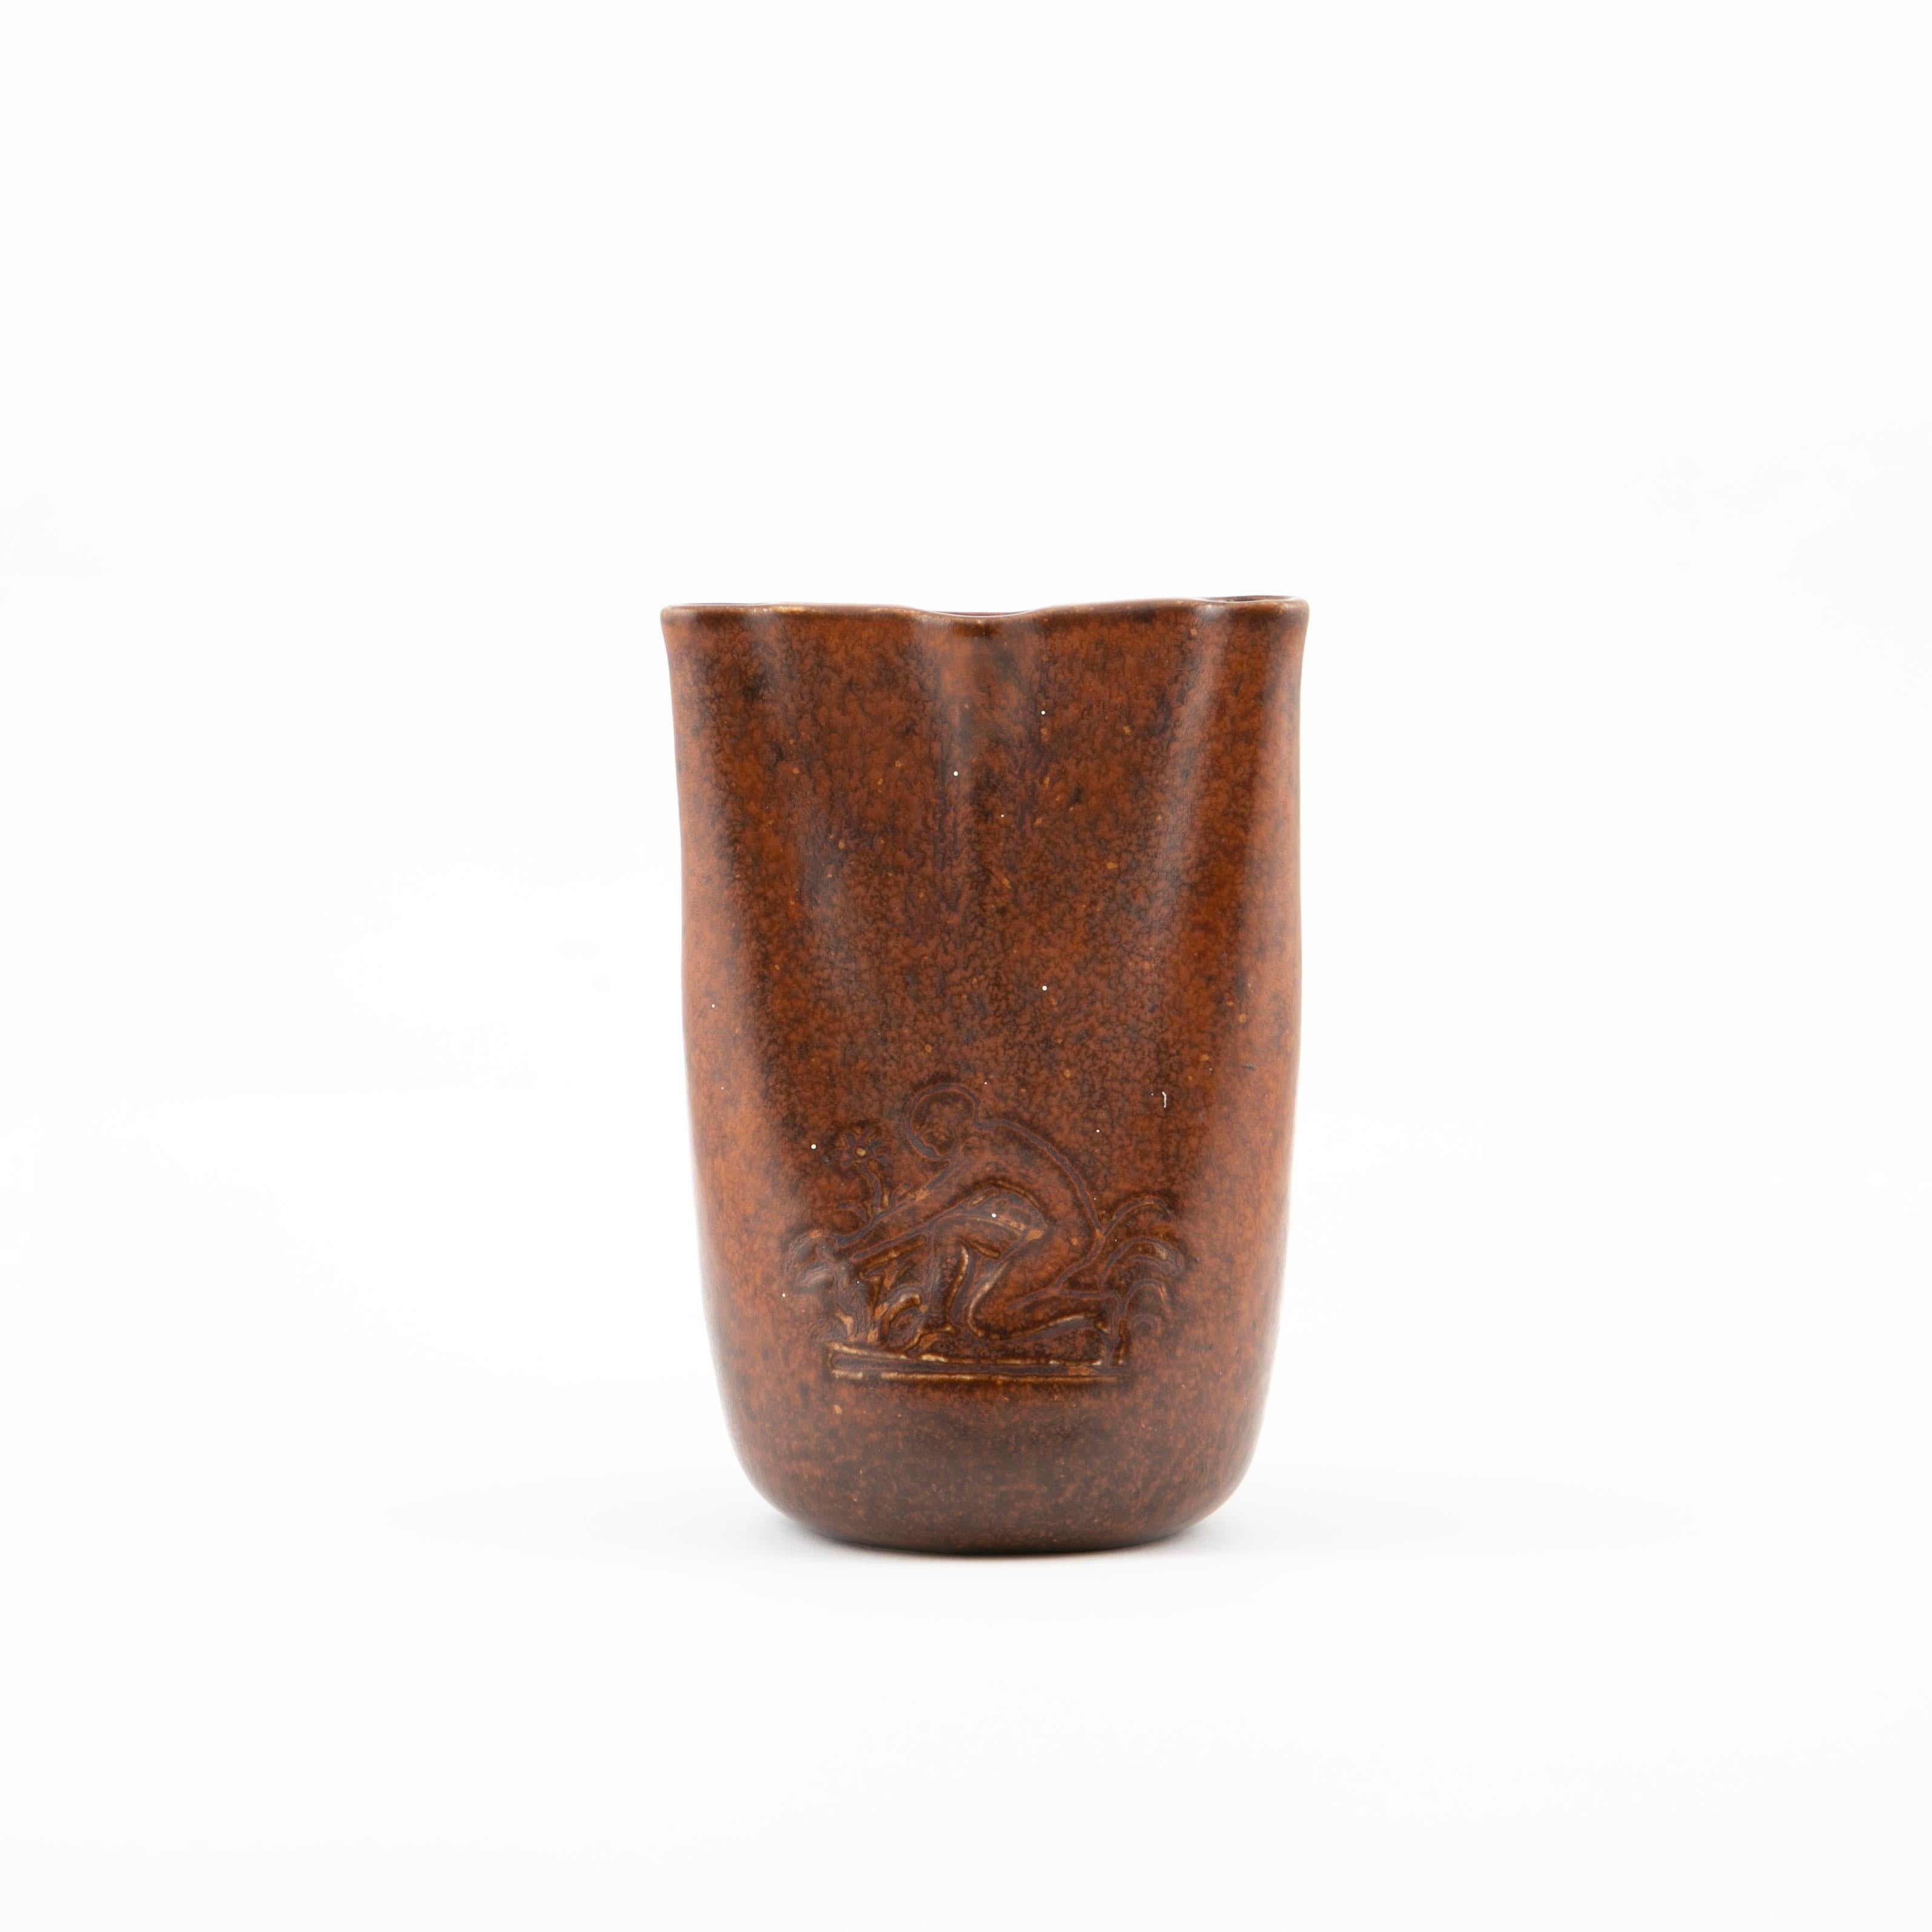 Jens Jakob Bregnø, danois 1877-1946

Vase à œillets en grès à glaçure marron. En haut, trois trous pour les œillets / fleurs simples. Vraisemblablement un seul exemplaire.
Sur un côté, relief latéral d'une personne agenouillée dans un parterre de